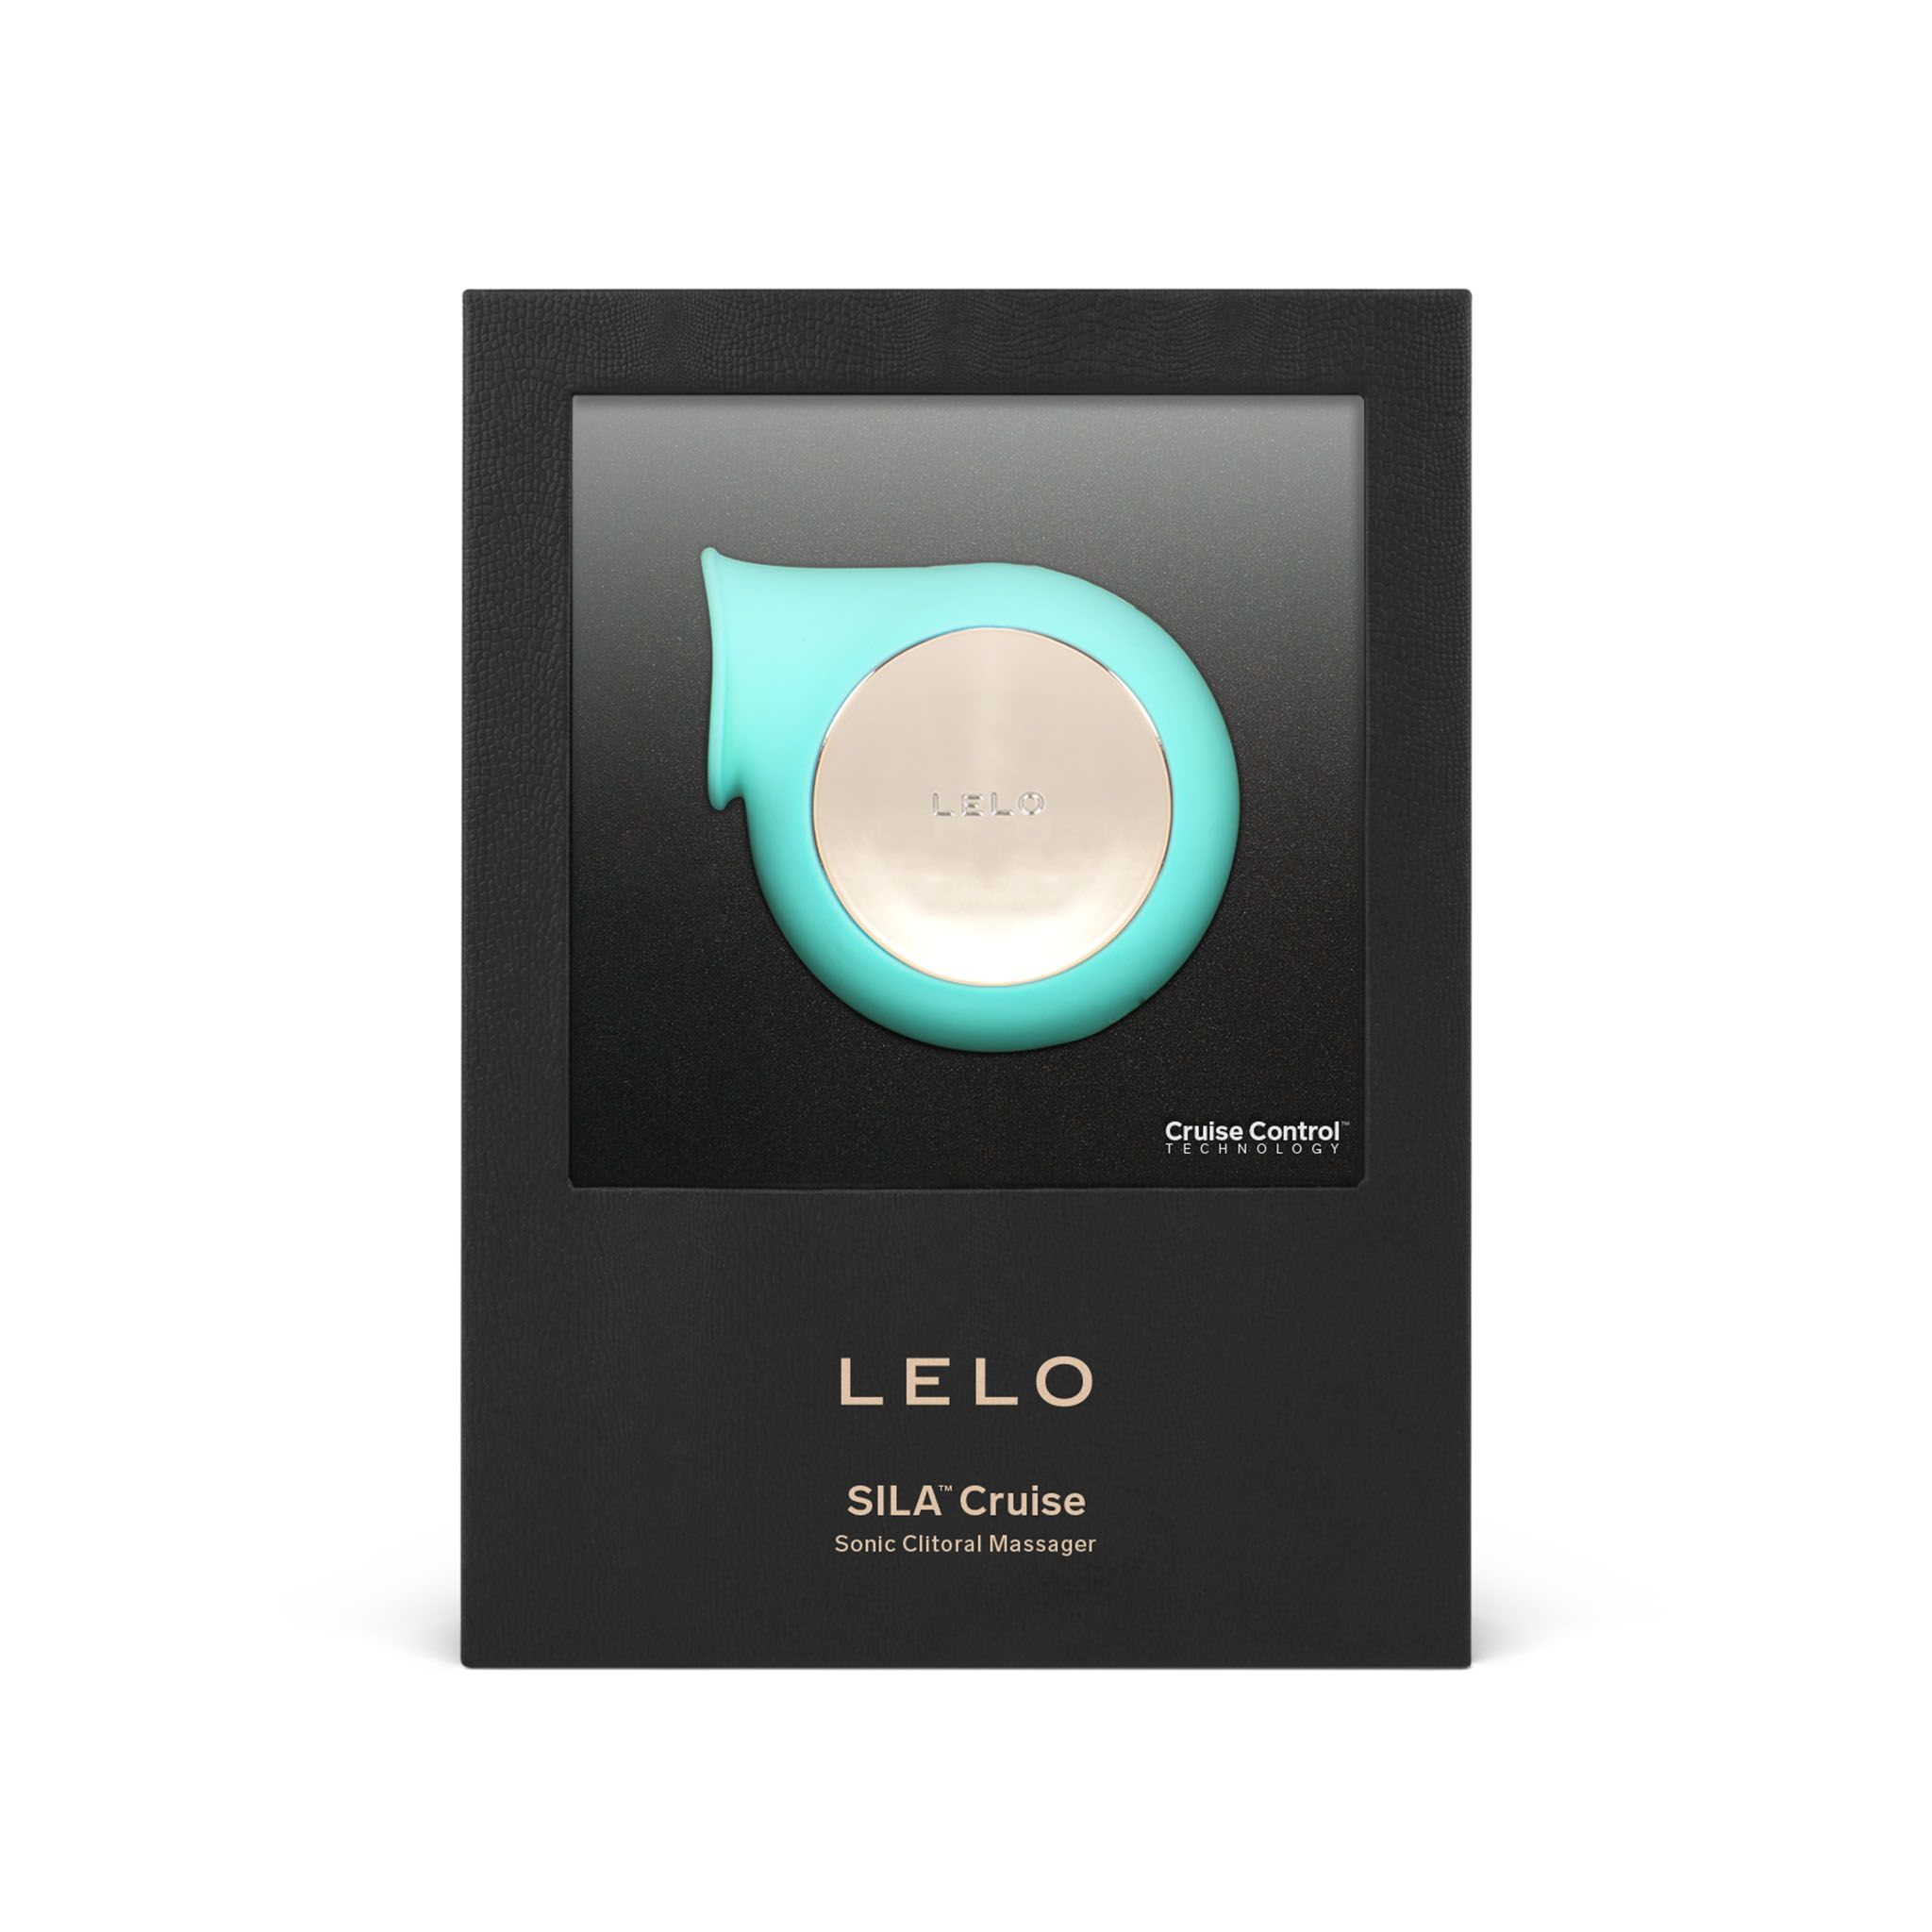 LELO LELO - Sila Cruise Sonic - Aqua Luftdruck-Vibrator clitoris-vibrators